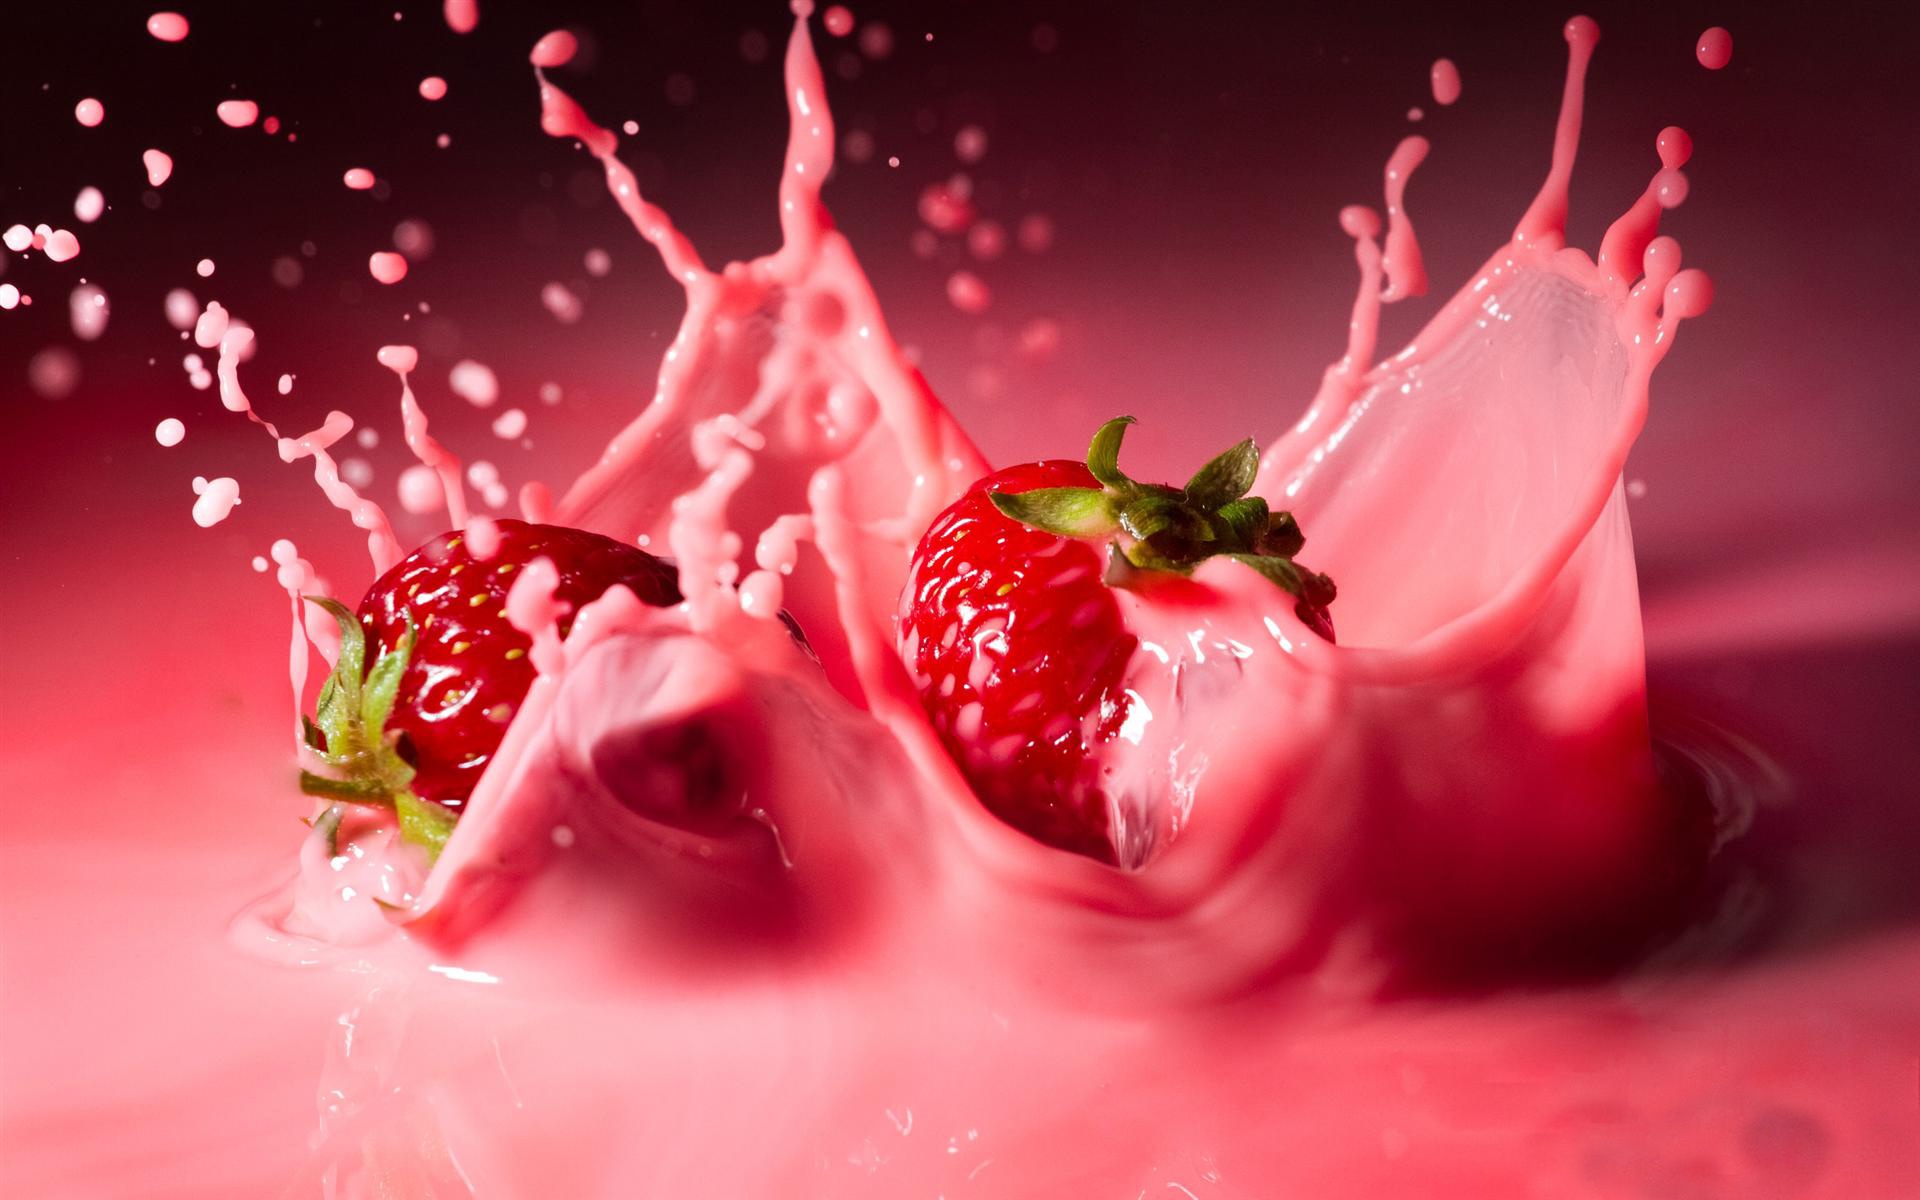 Strawberries in strawberry yogurt.